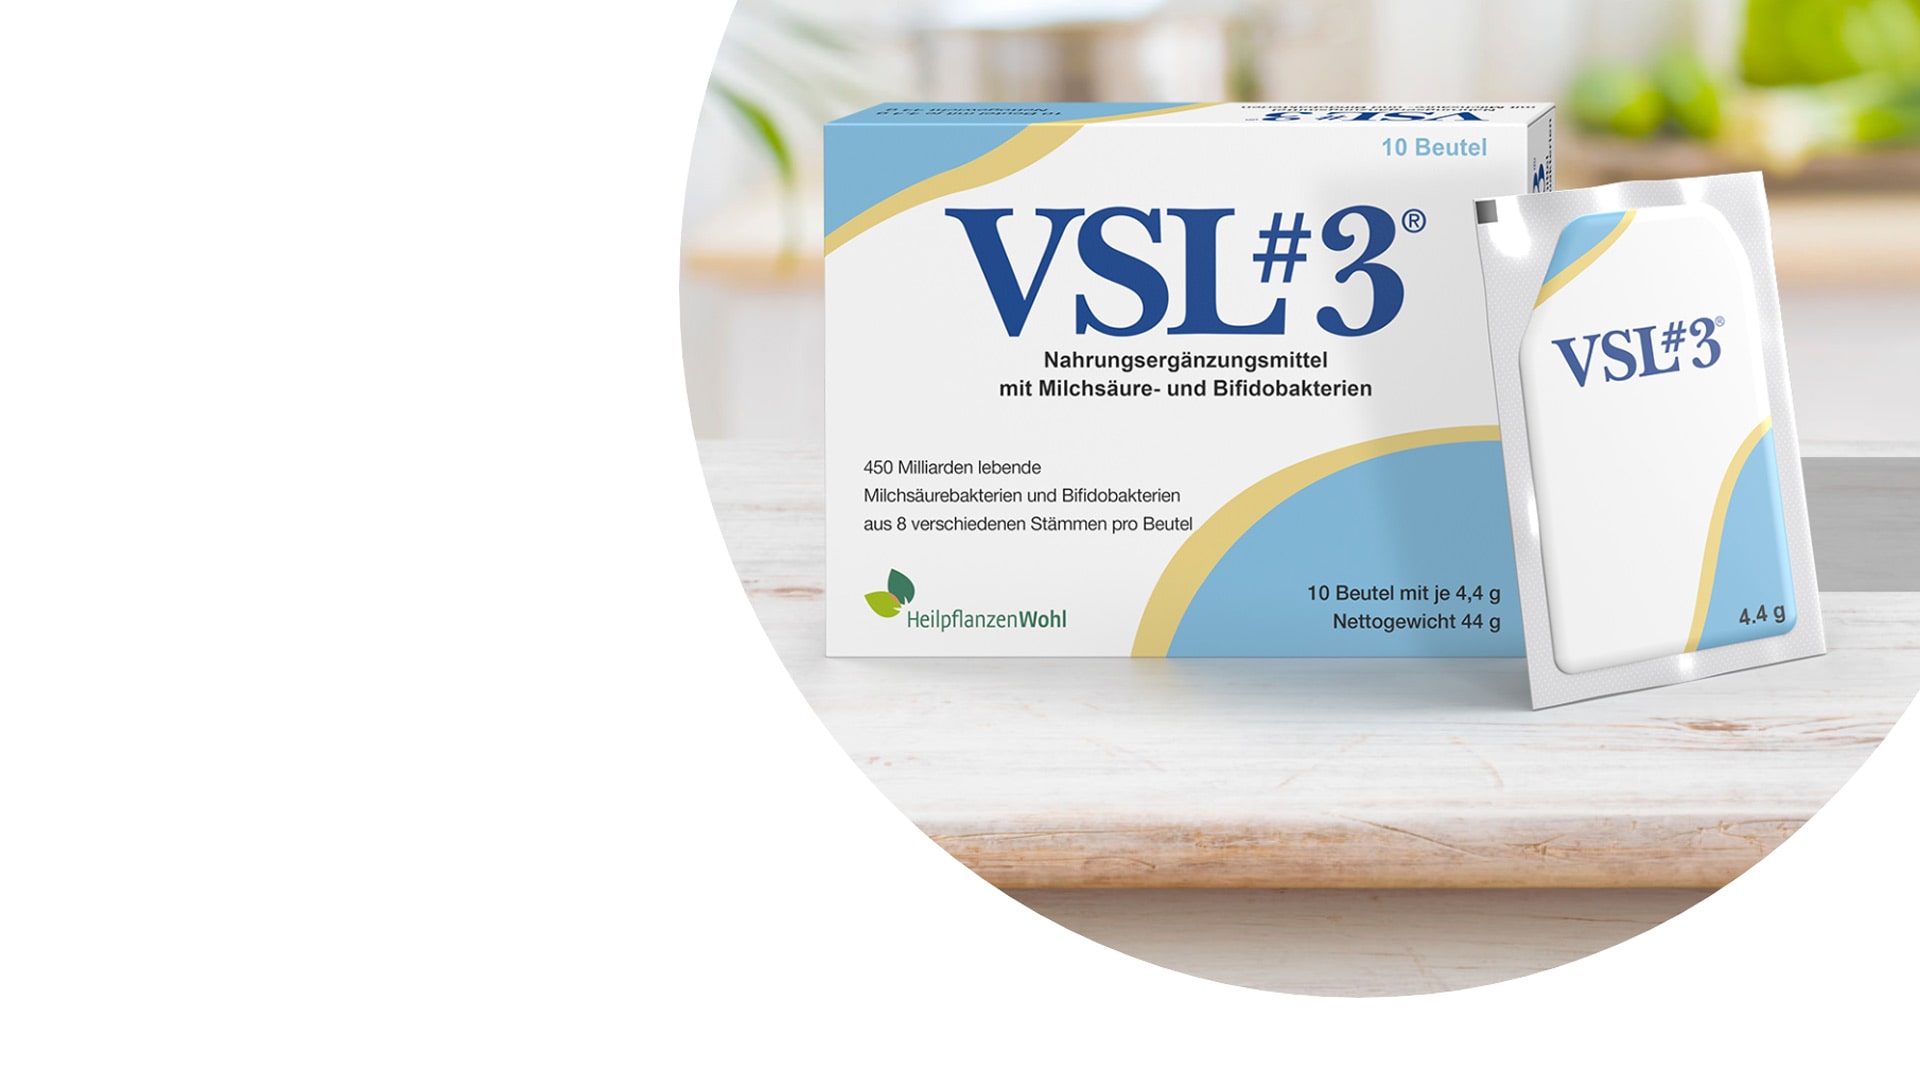 VSL#3 Verpackung und Beutel